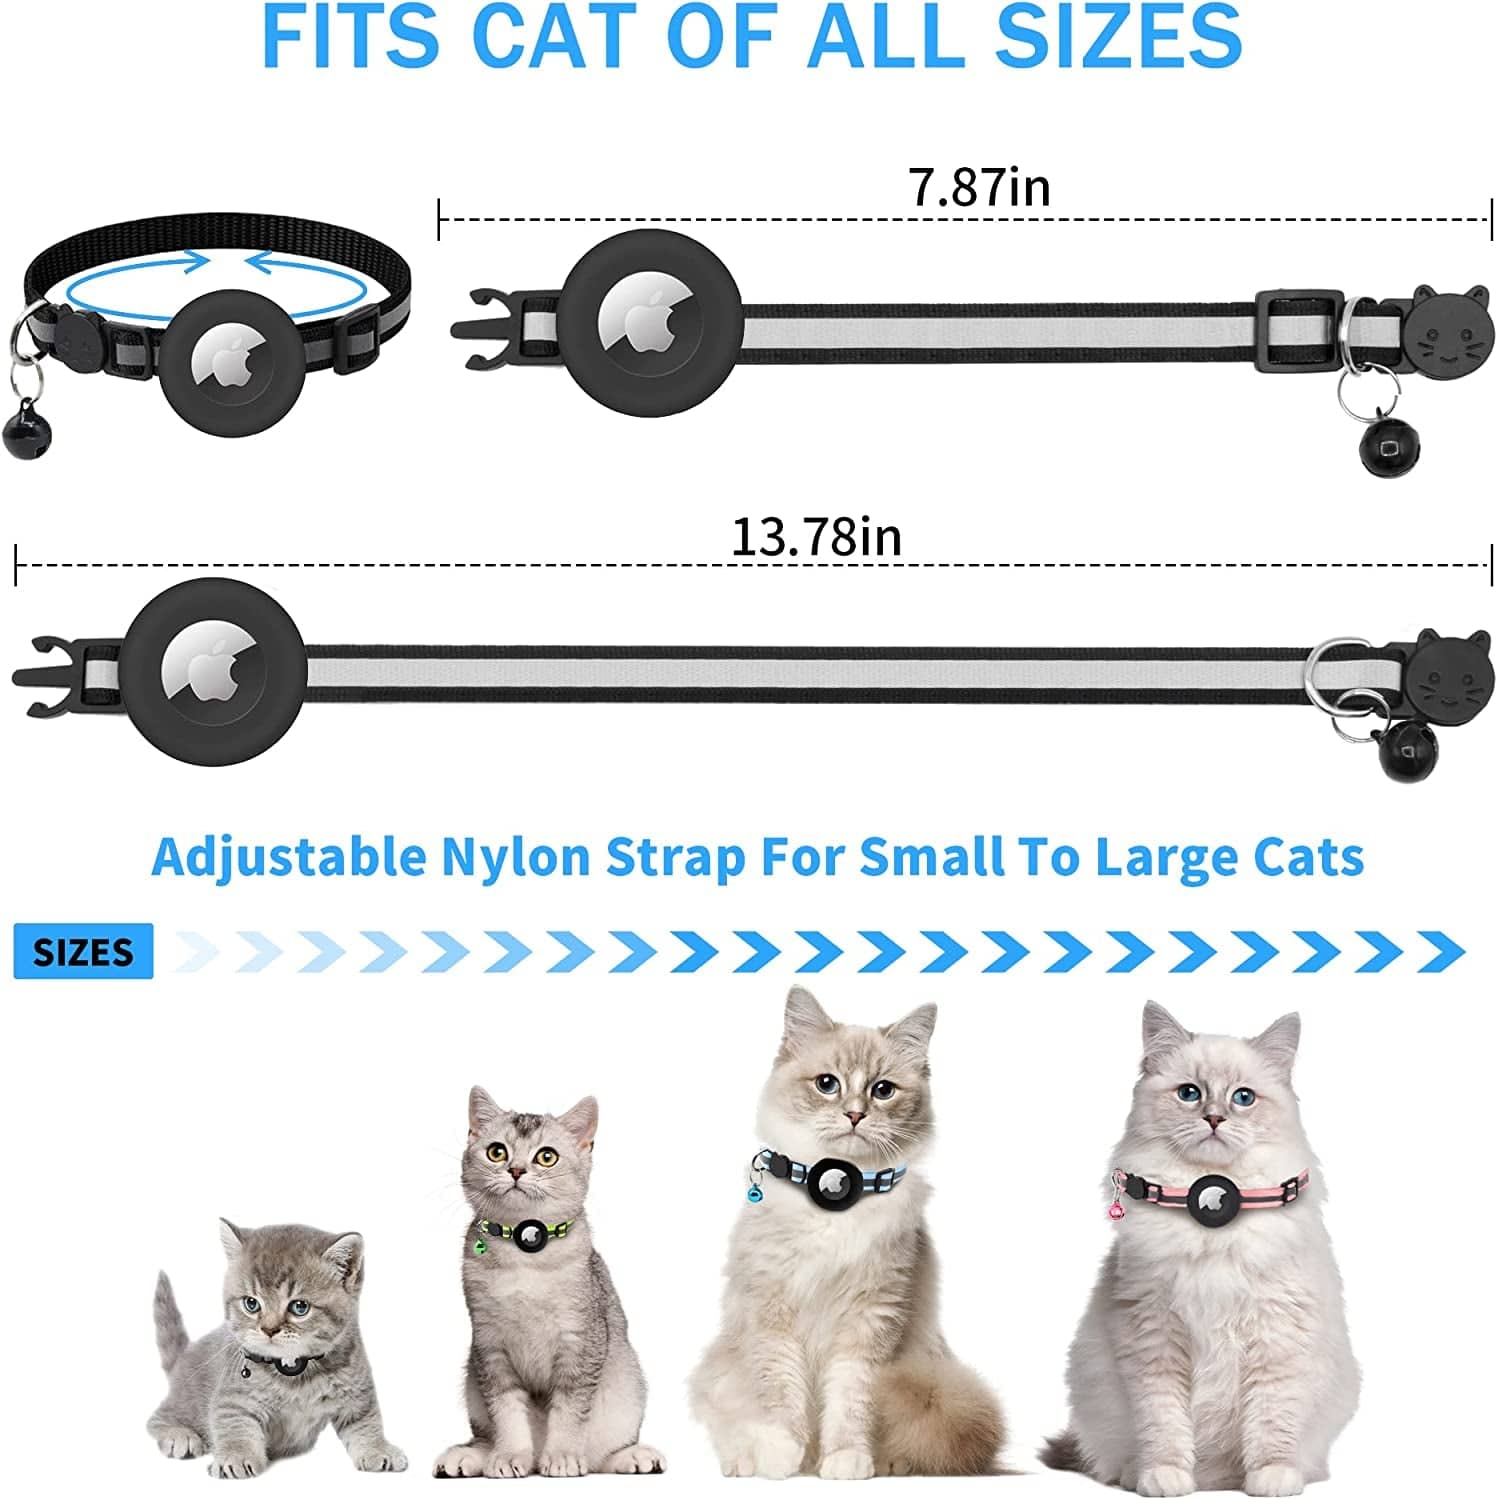 Collier de chat compatible Airtag, collier Airtag Cat avec cloche